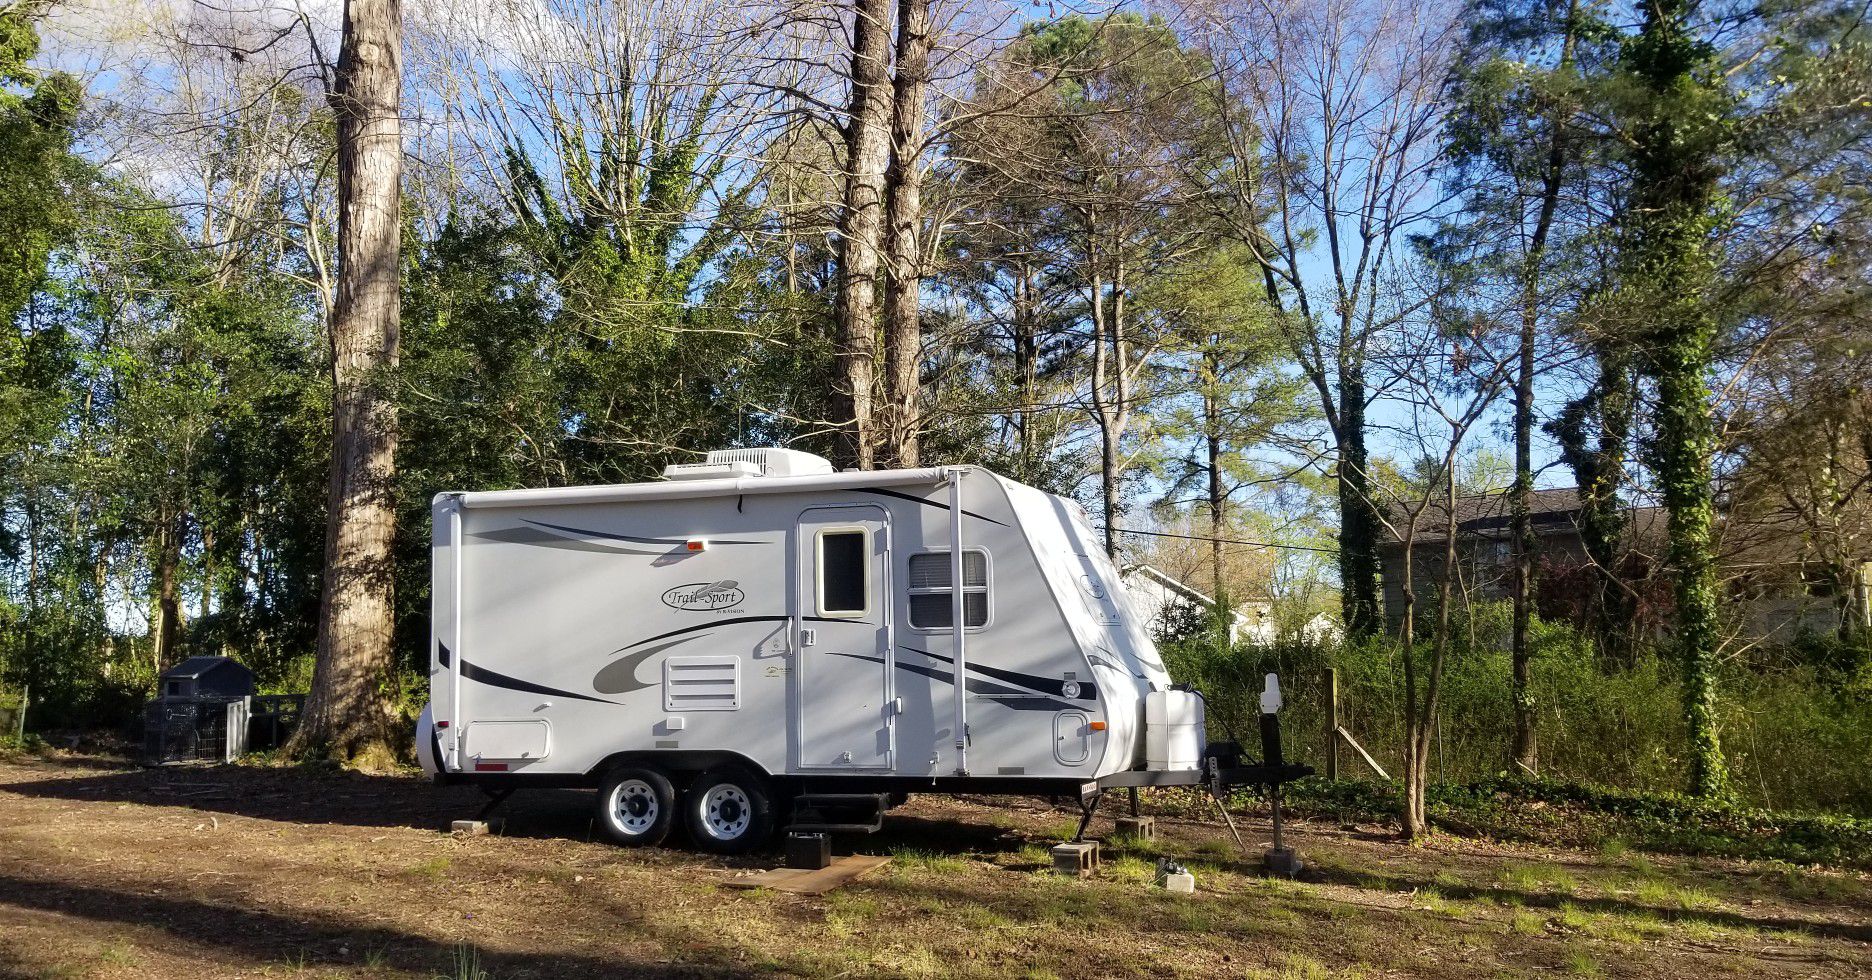 Remodeled 21' RV camper